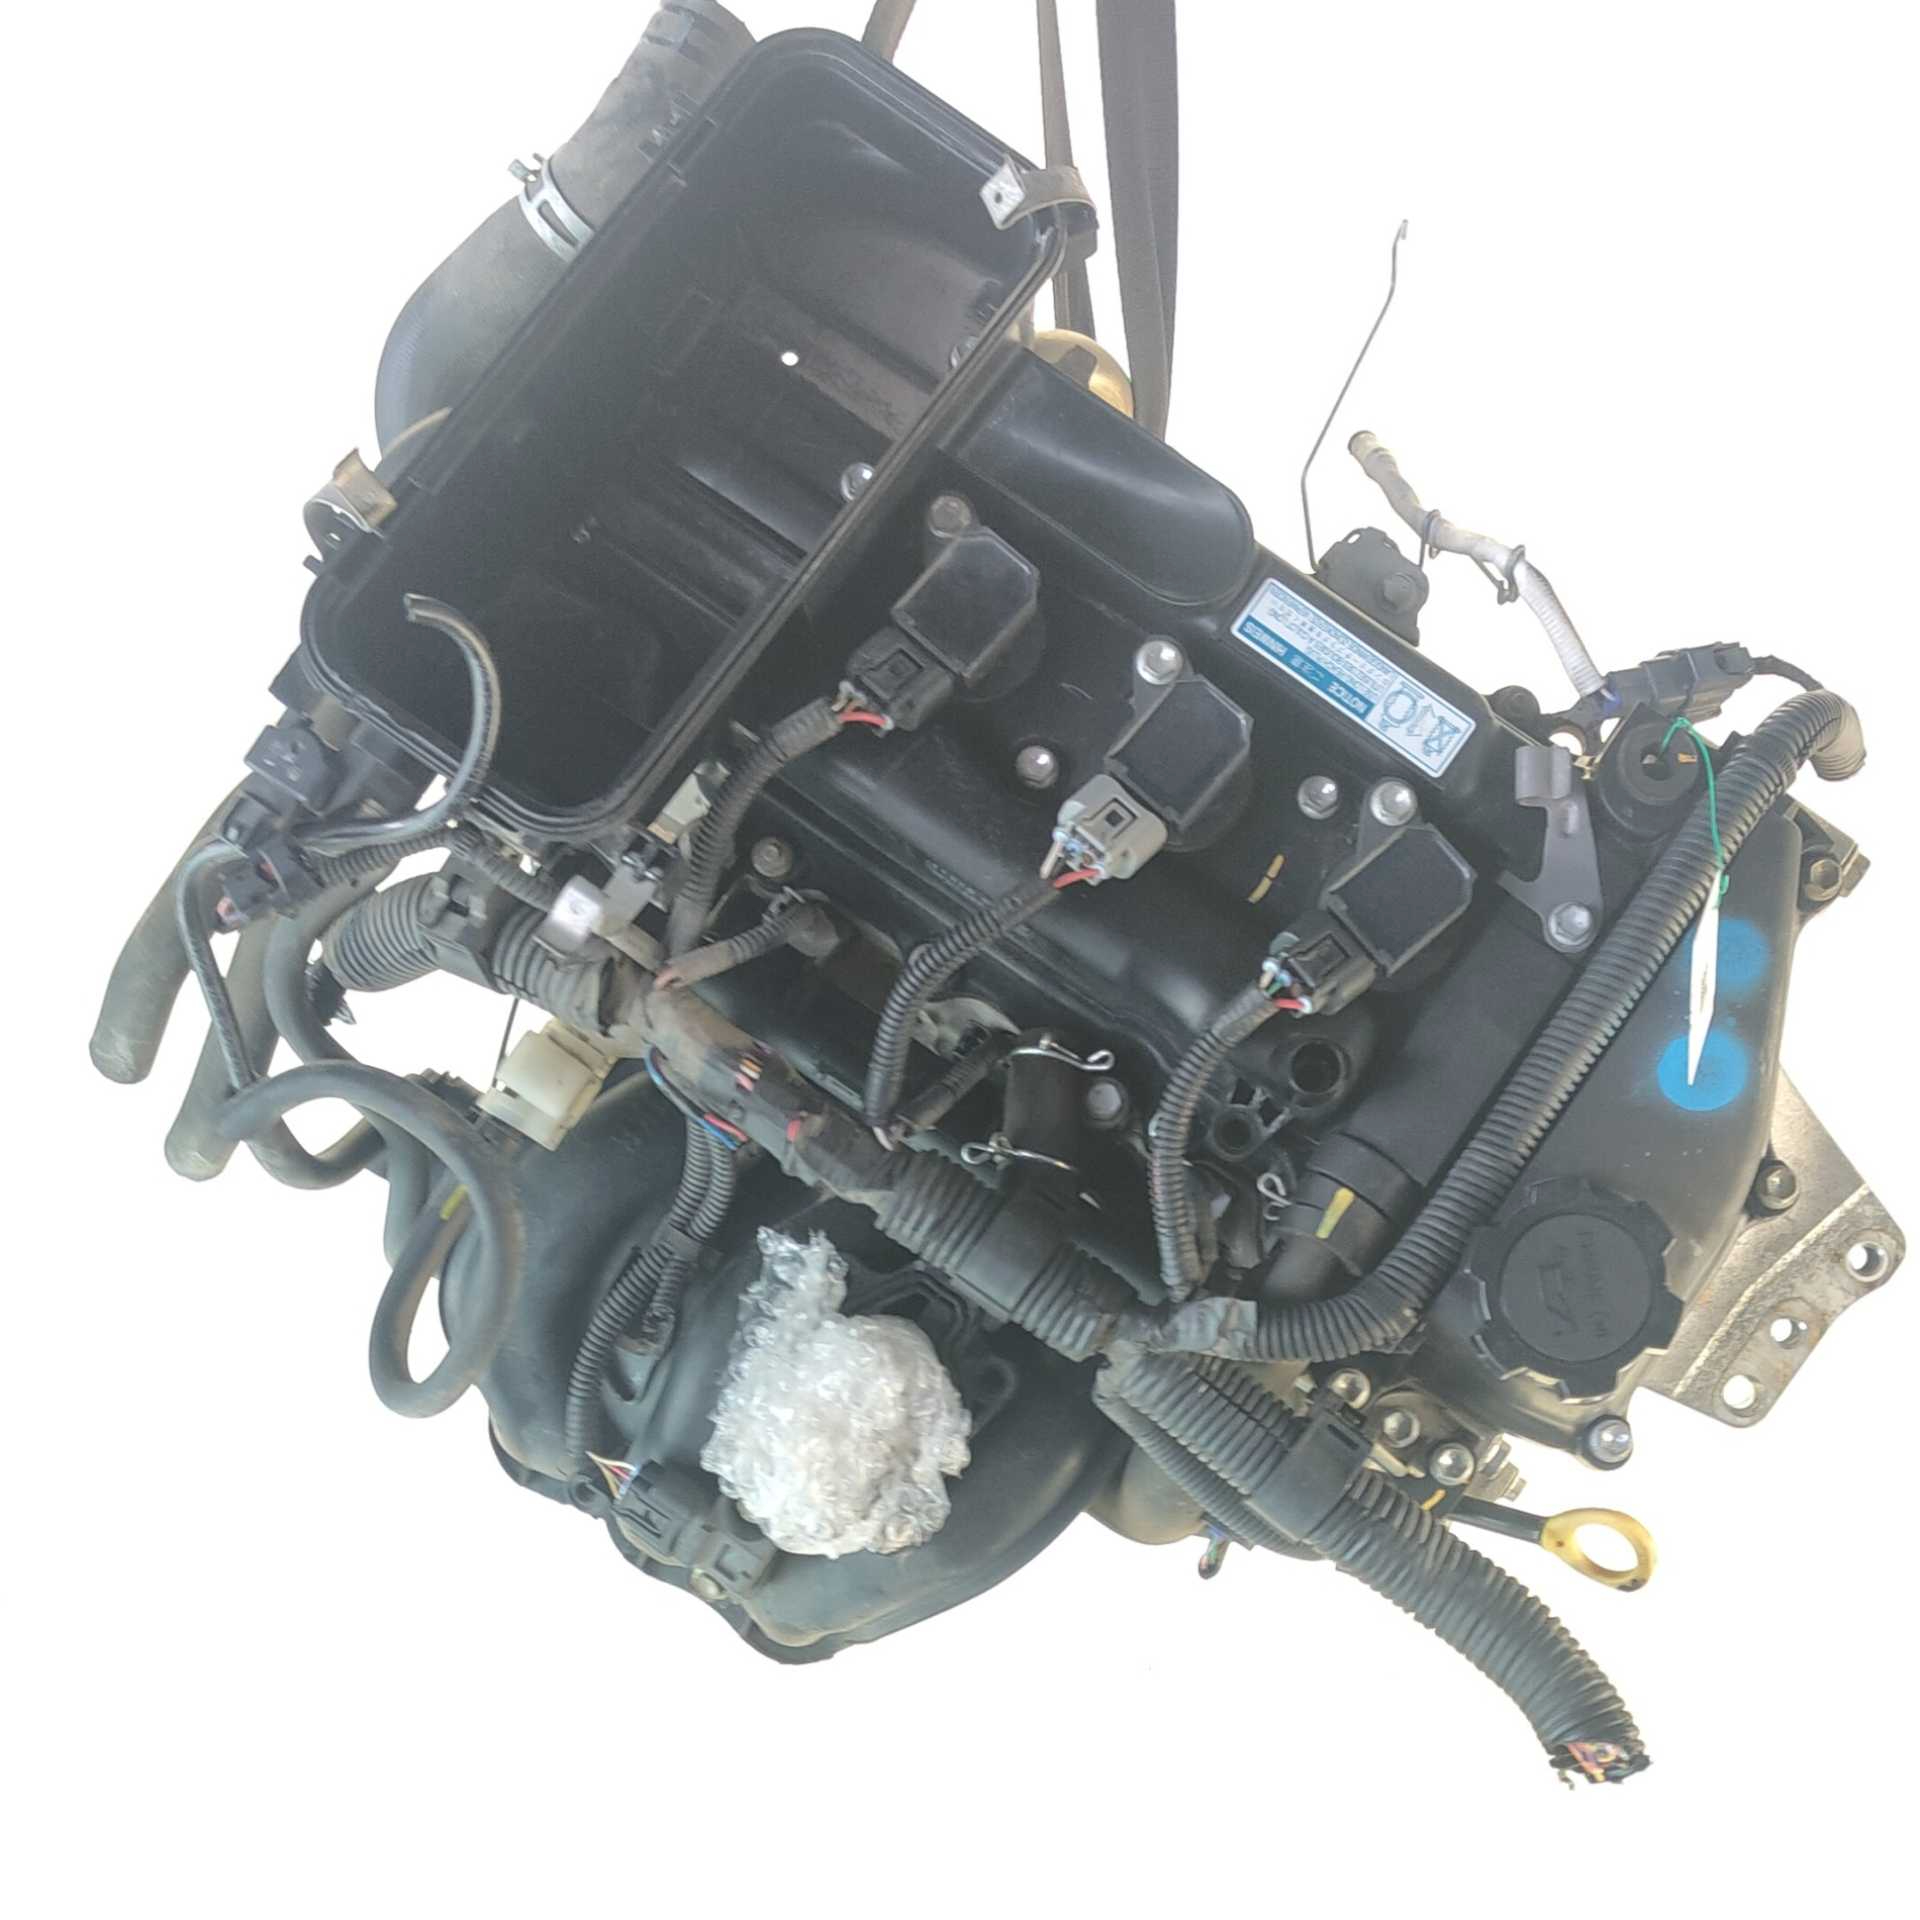 MOTOR PEUGEOT 107 1.0 (50 KW / 68 CV) (06.2005 - 05.2014)